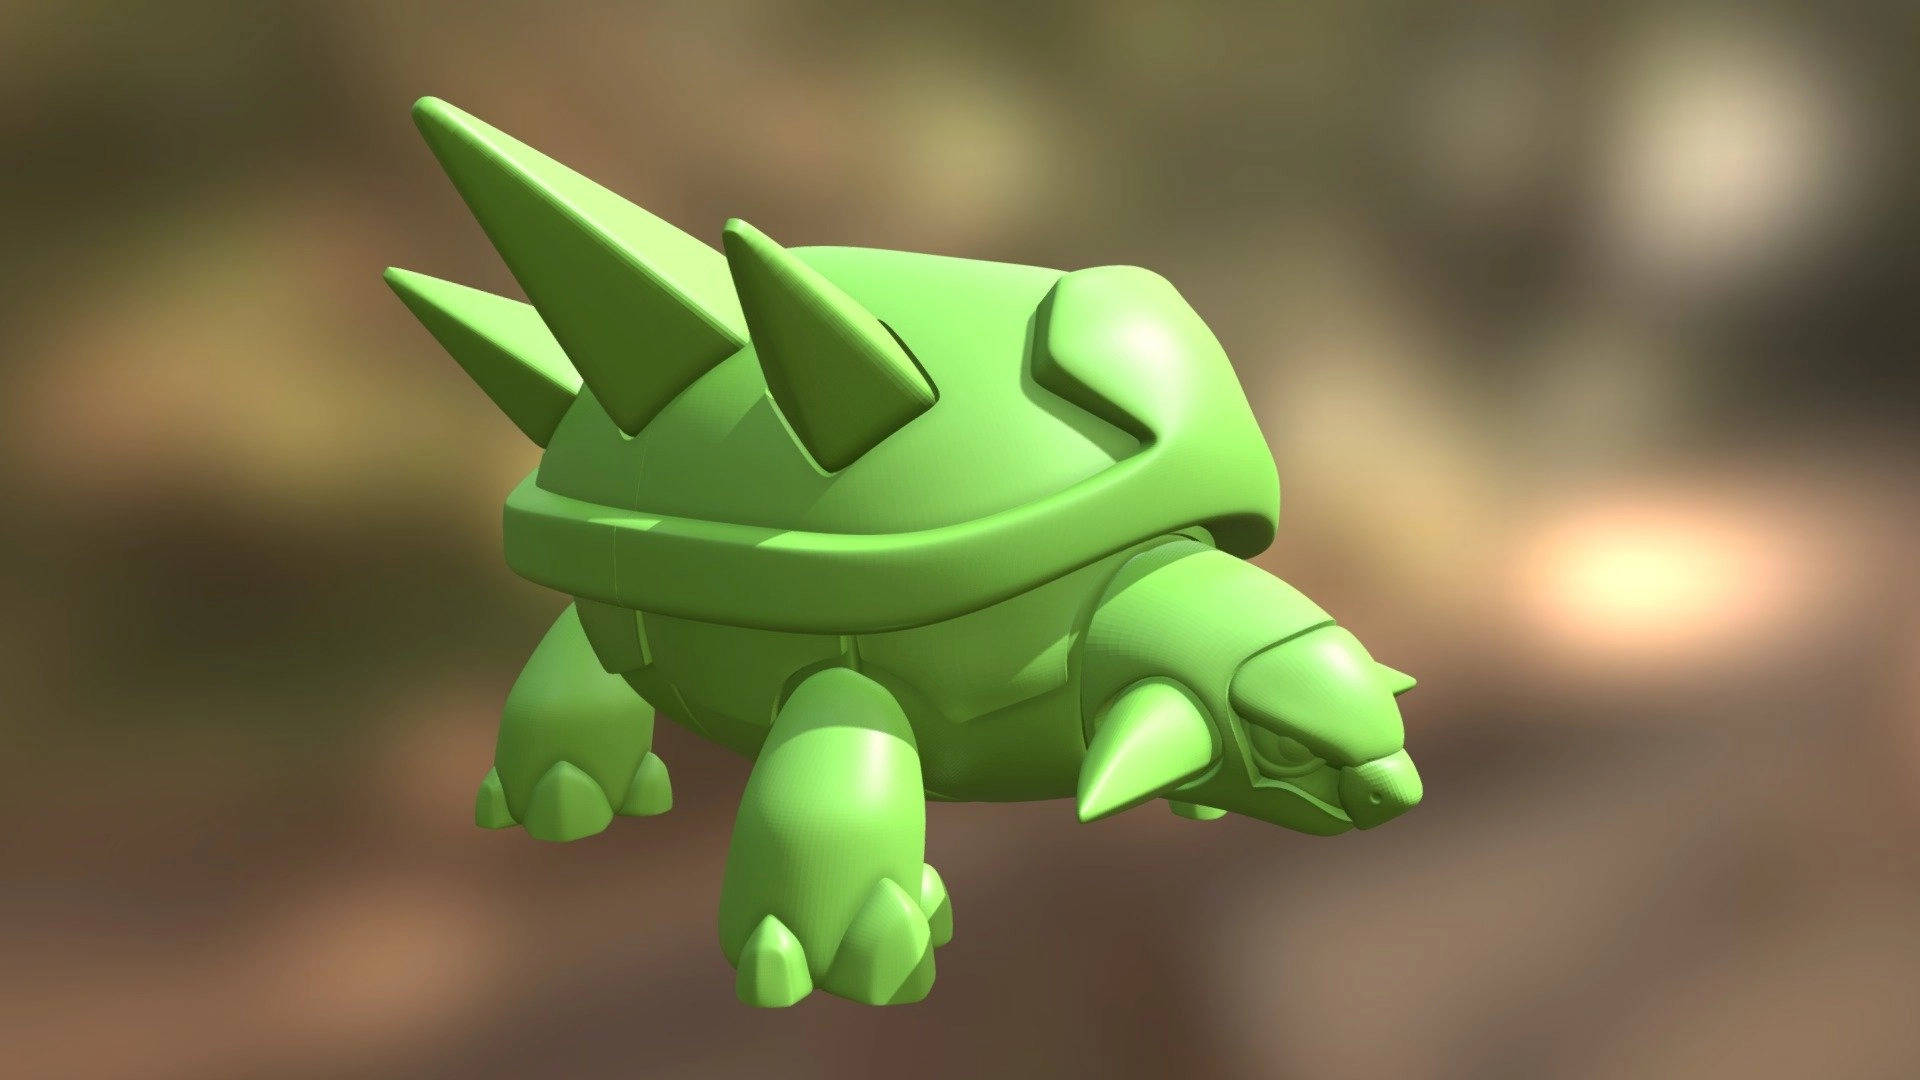 3D Green Torterra Pokemon Model Wallpaper